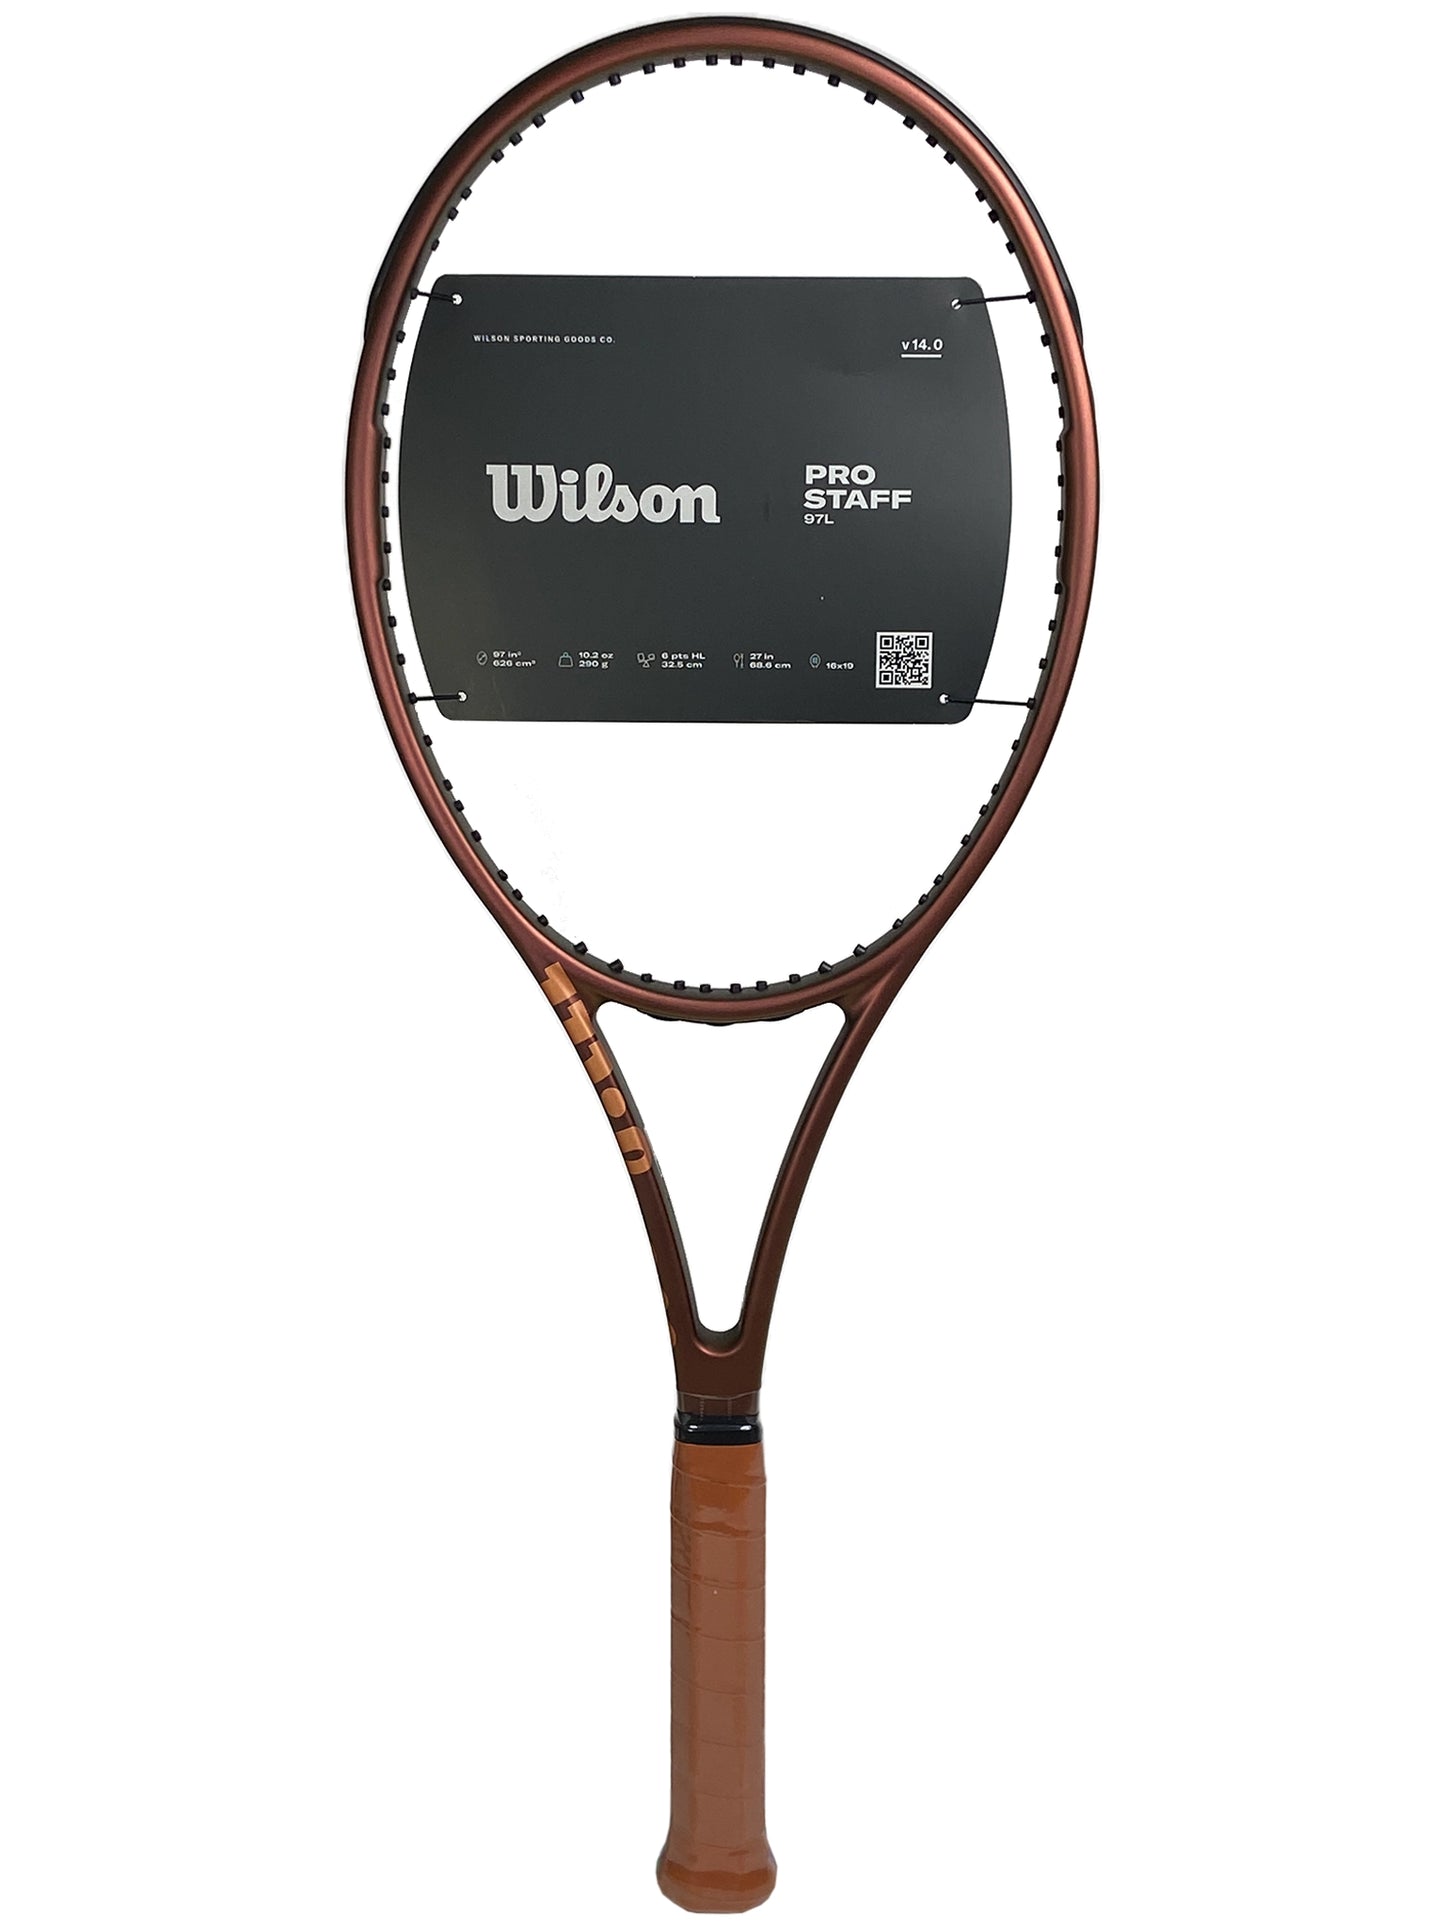 Wilson Pro Staff 97L V14.0 (WR125911)